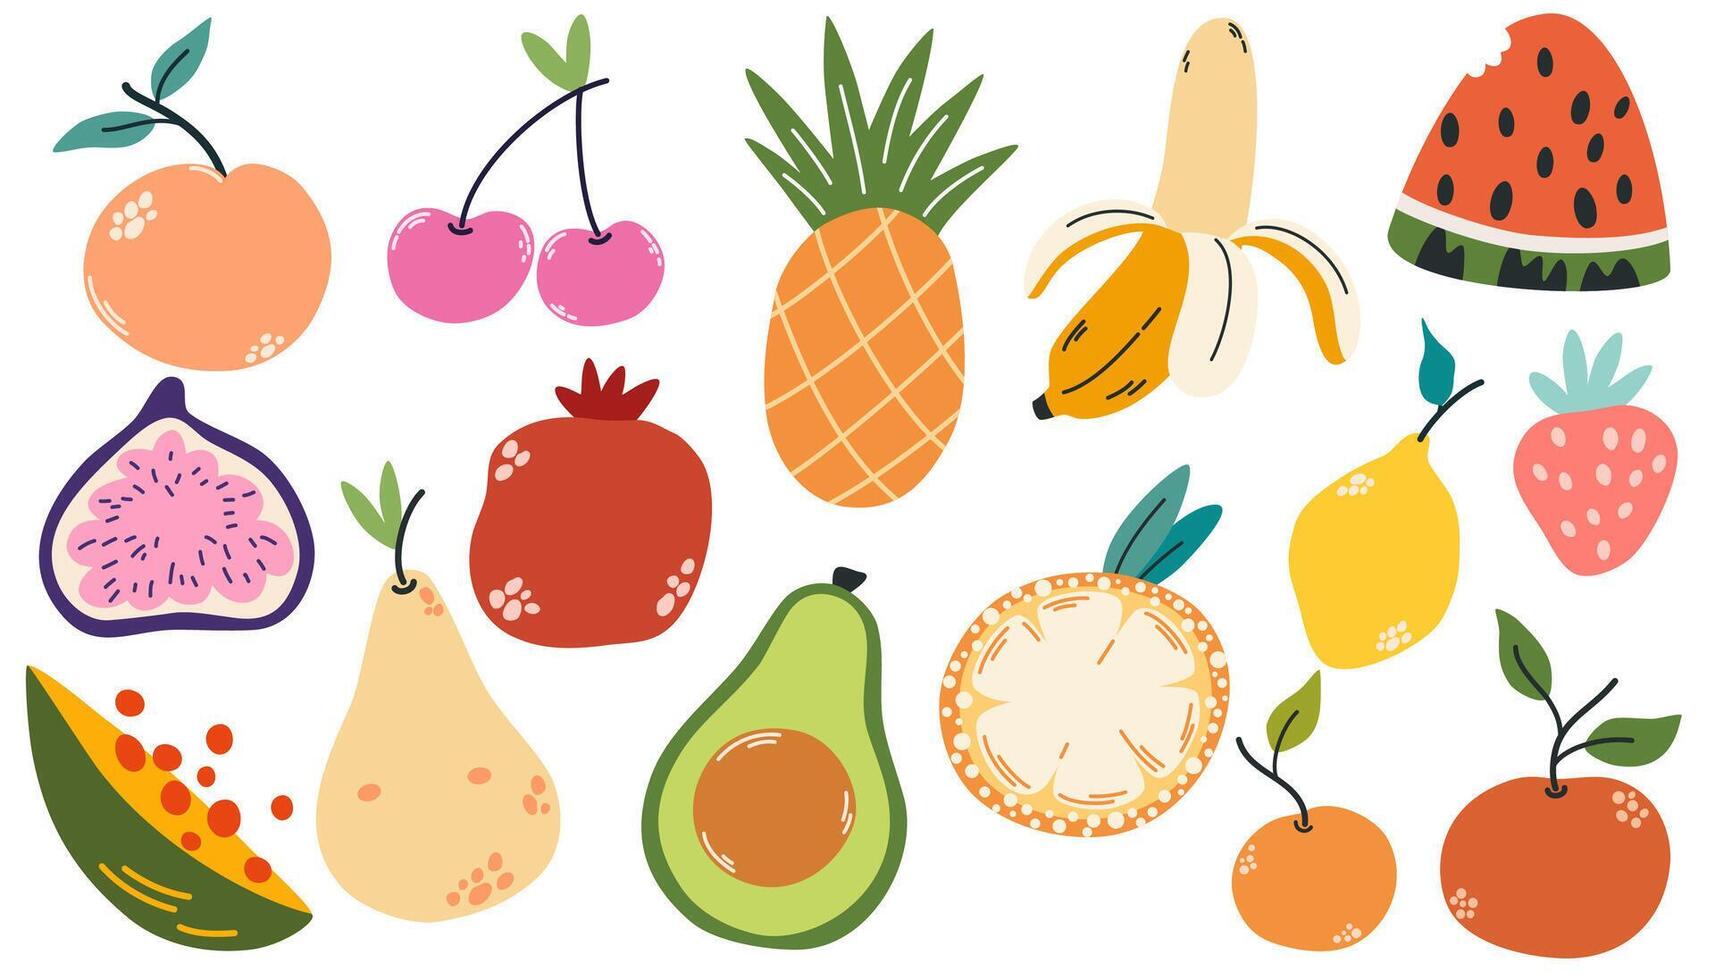 tekening vruchten. natuurlijk tropisch fruit, doodles citrus oranje en vitamine citroen. veganistisch keuken appel hand- getrokken illustratie vector